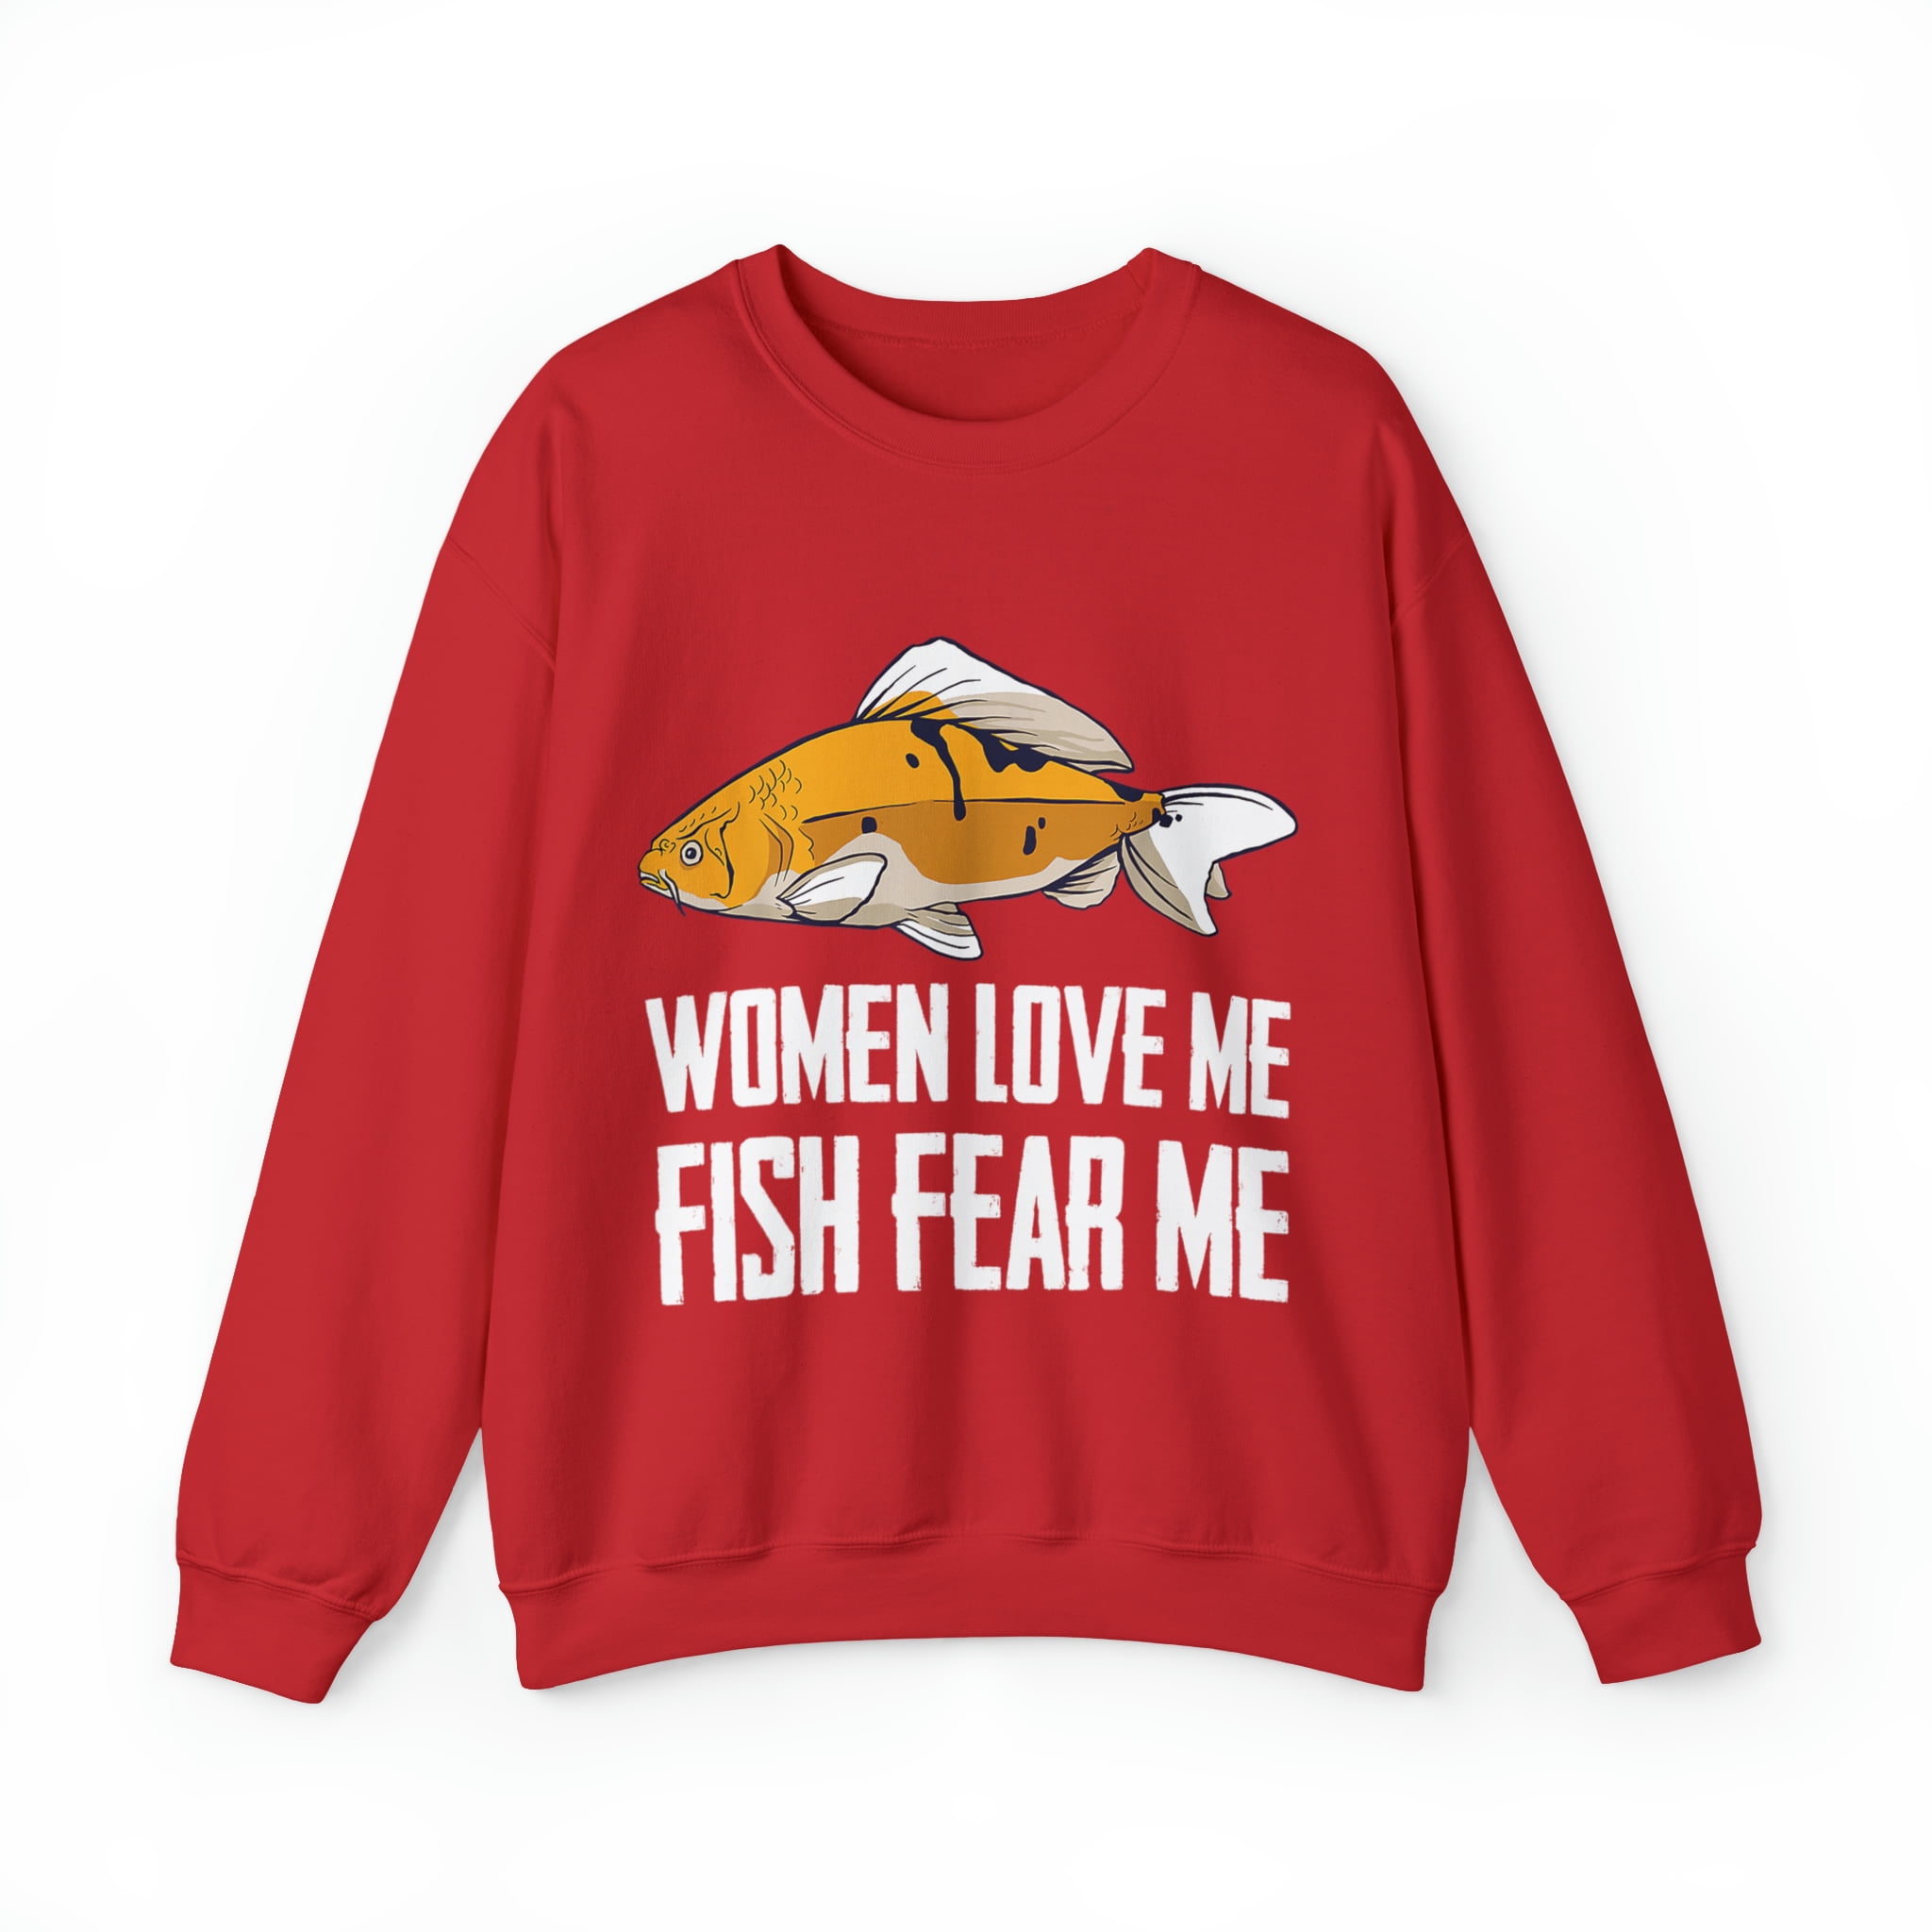 Funny Fish Fear Me Women Love Me Fish Fear Me Fishing Lovers Sweatshirt 